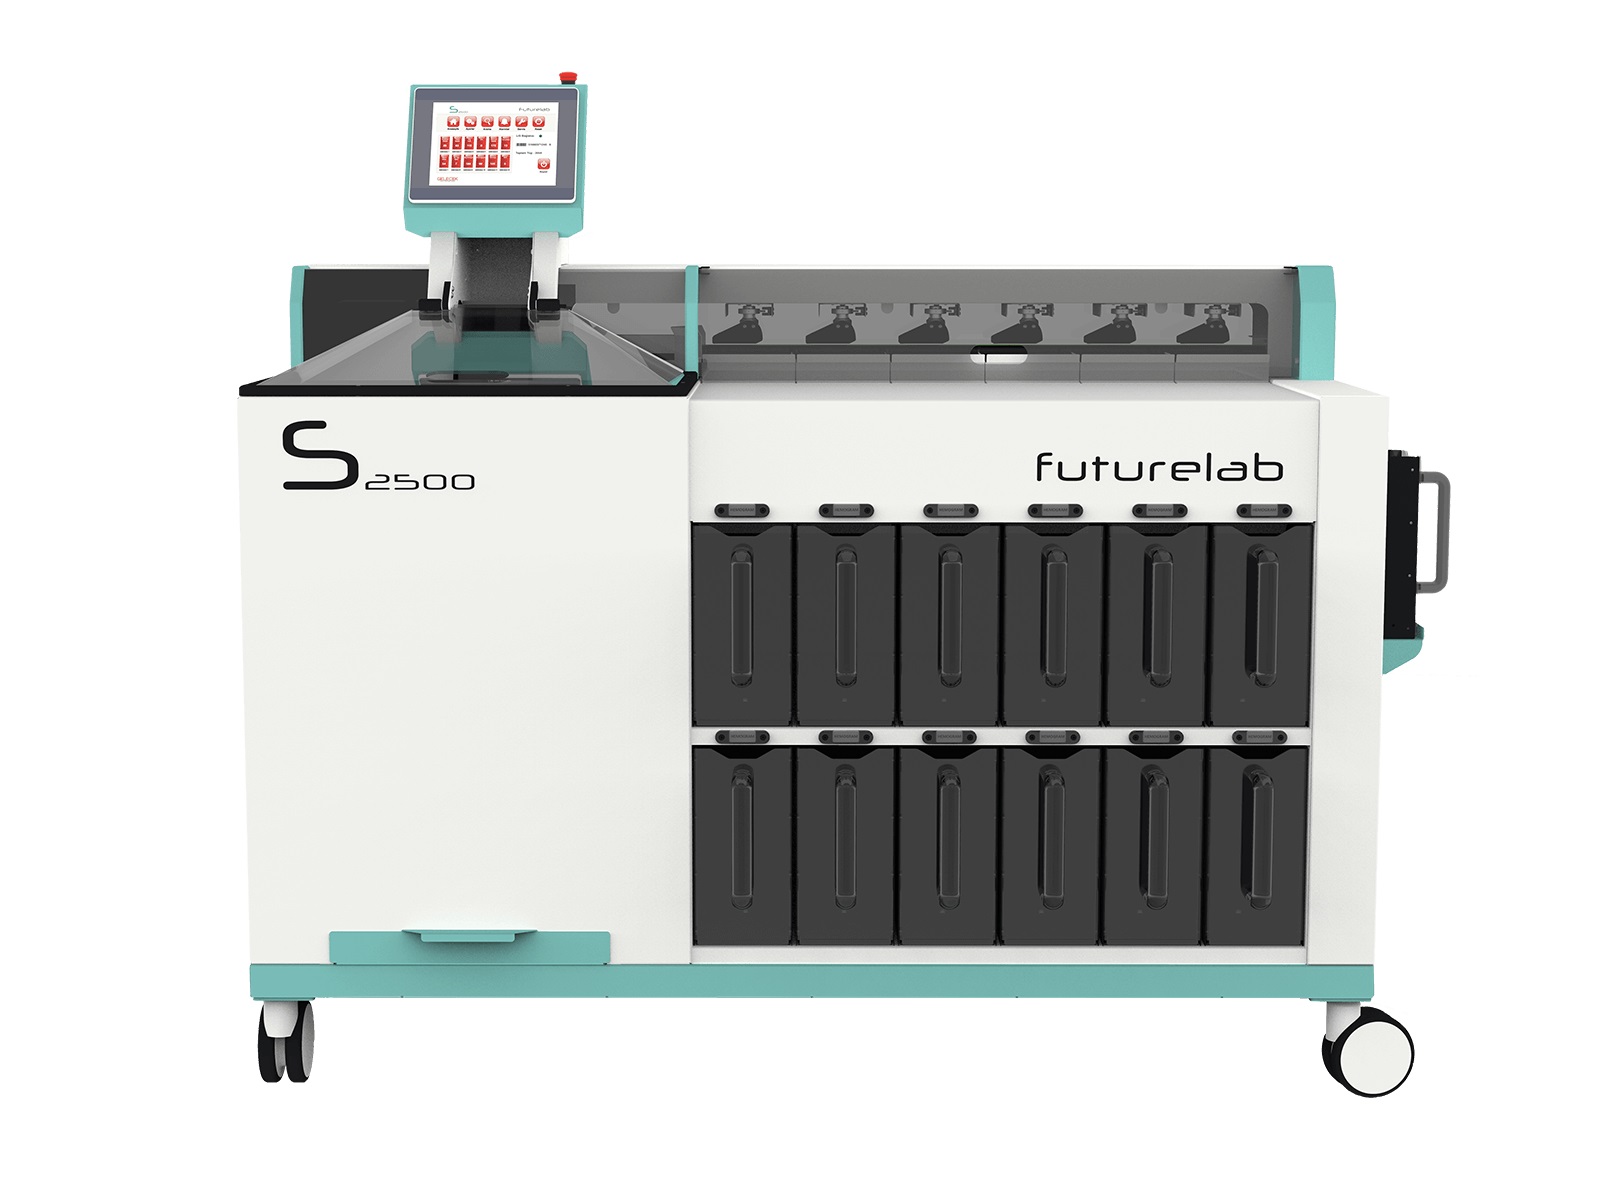 The Futurelab S2500